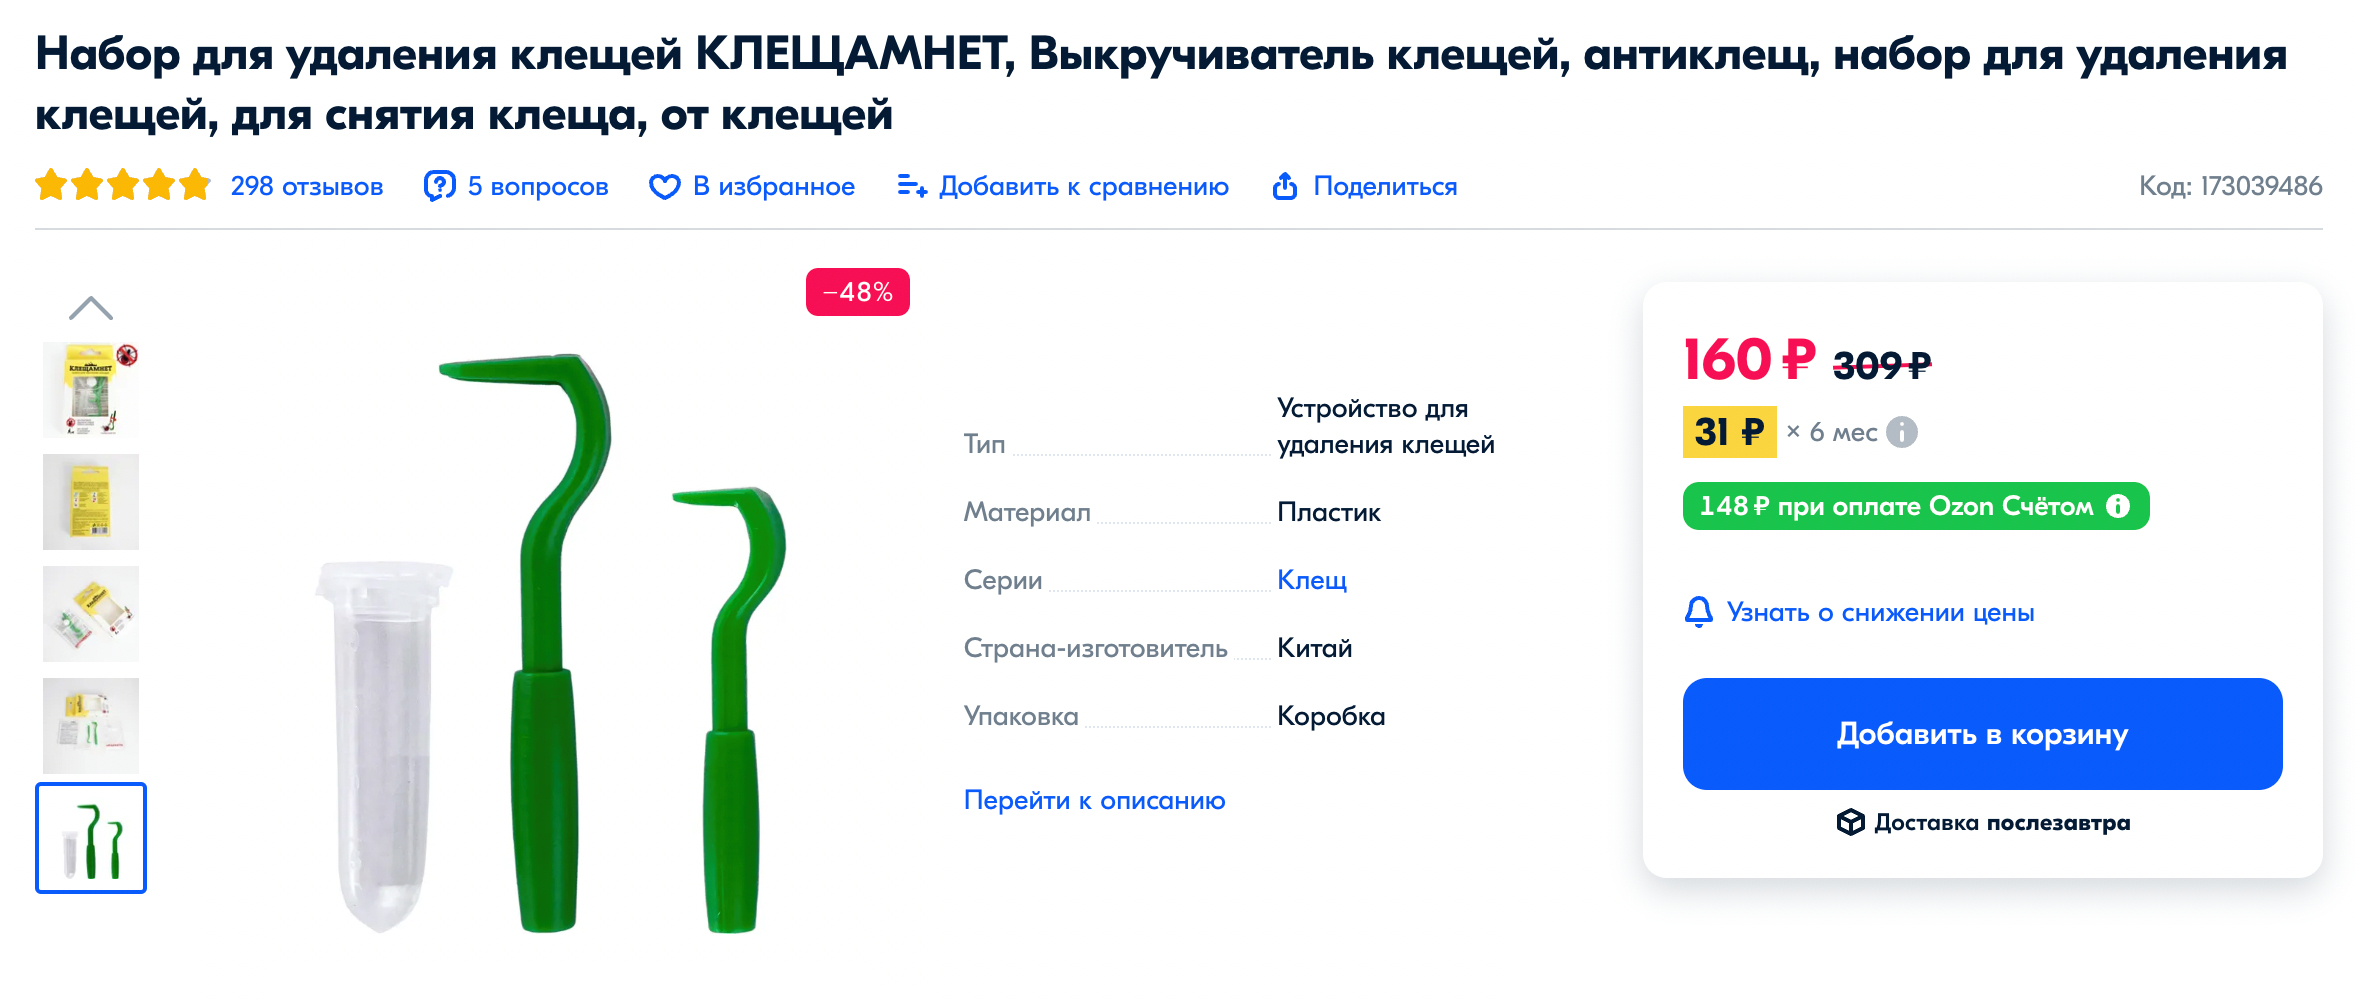 Приспособления для самостоятельного удаления клещей. Их можно купить в интернете. Источник: ozon.ru